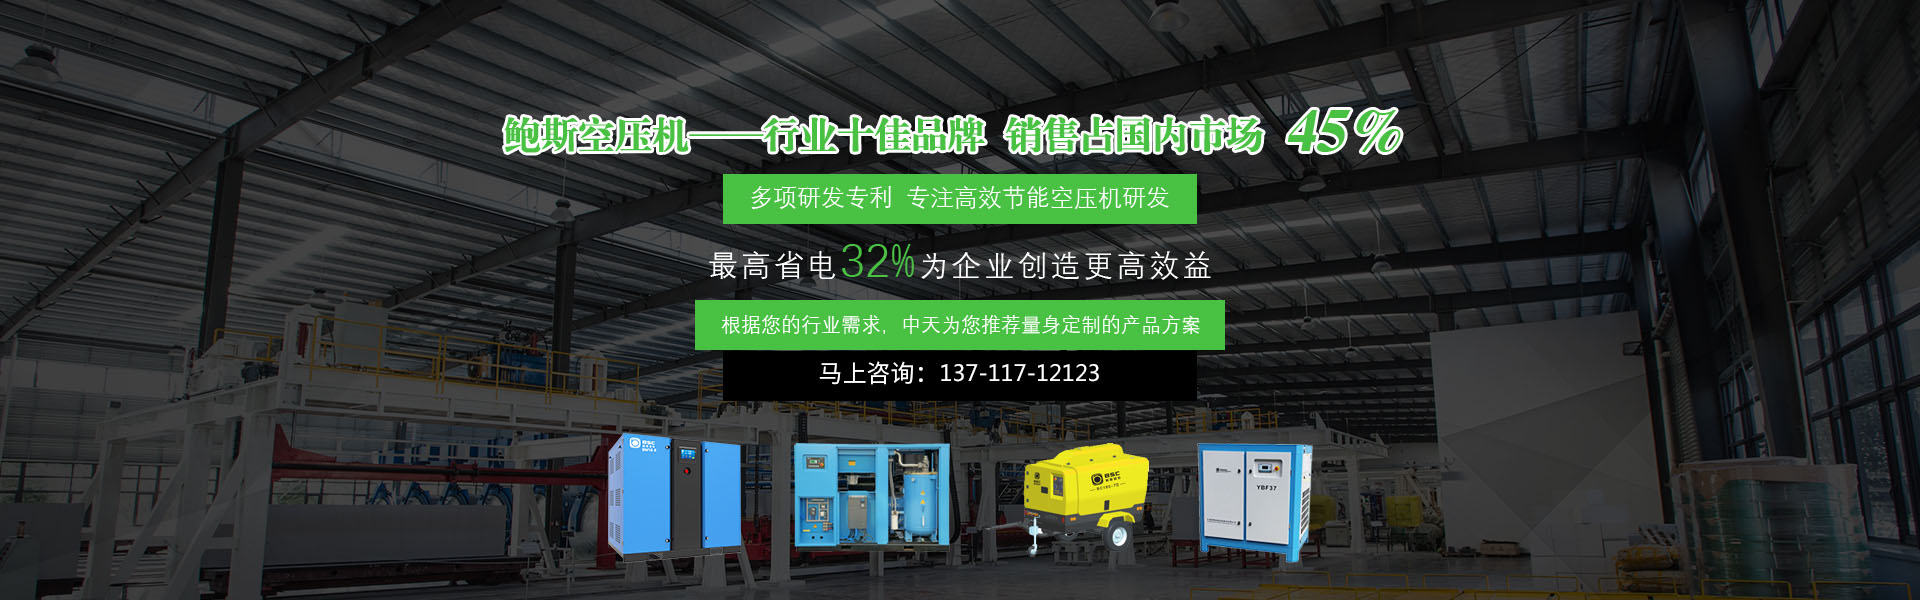 广州中天螺杆式空压机厂家为你量身定制产品方案